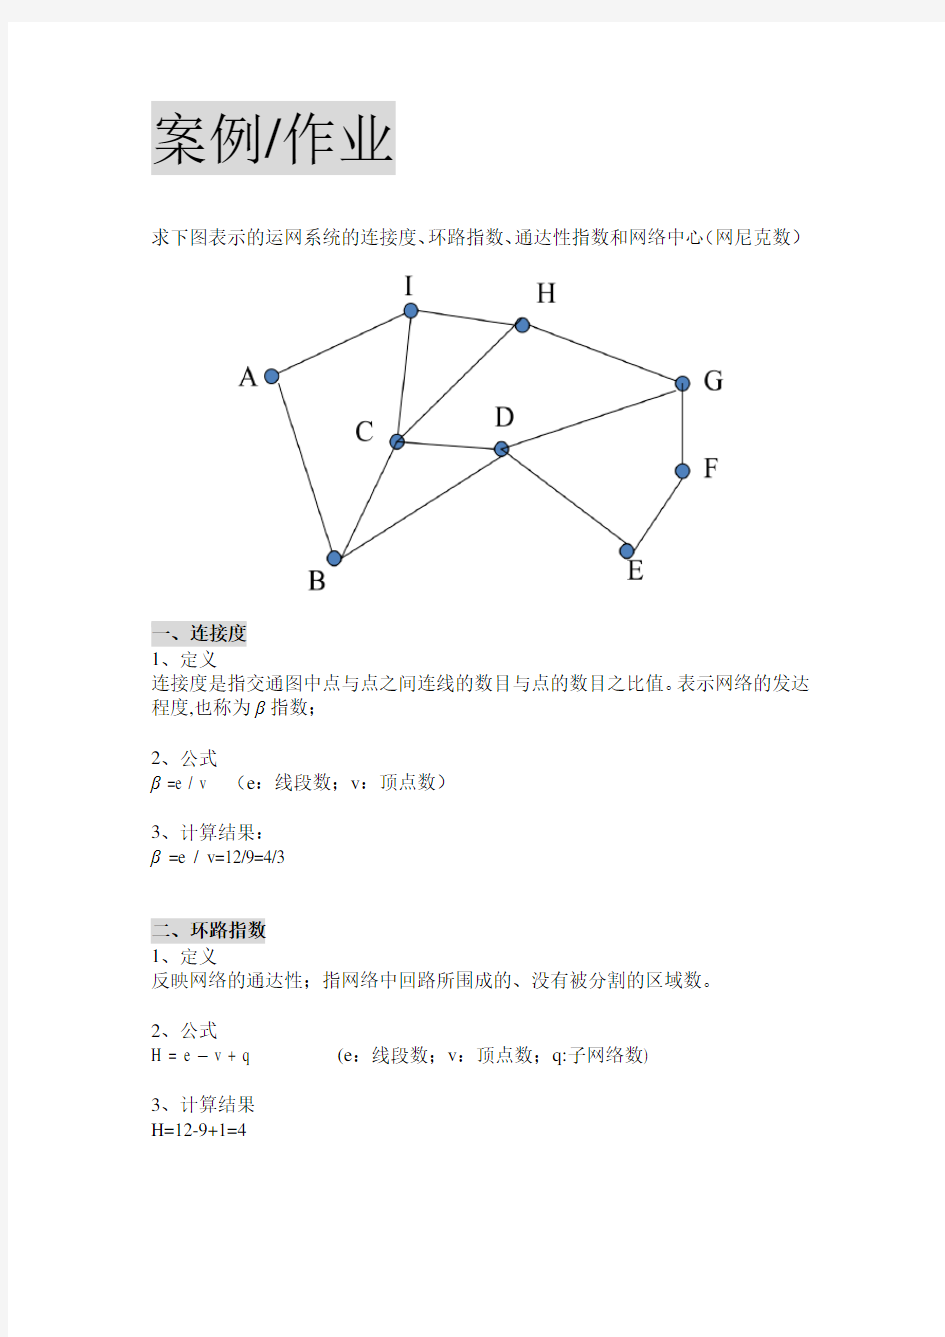 求下图表示的运网系统的连接度、环路指数、通达性指数和网络中心(网尼克数)